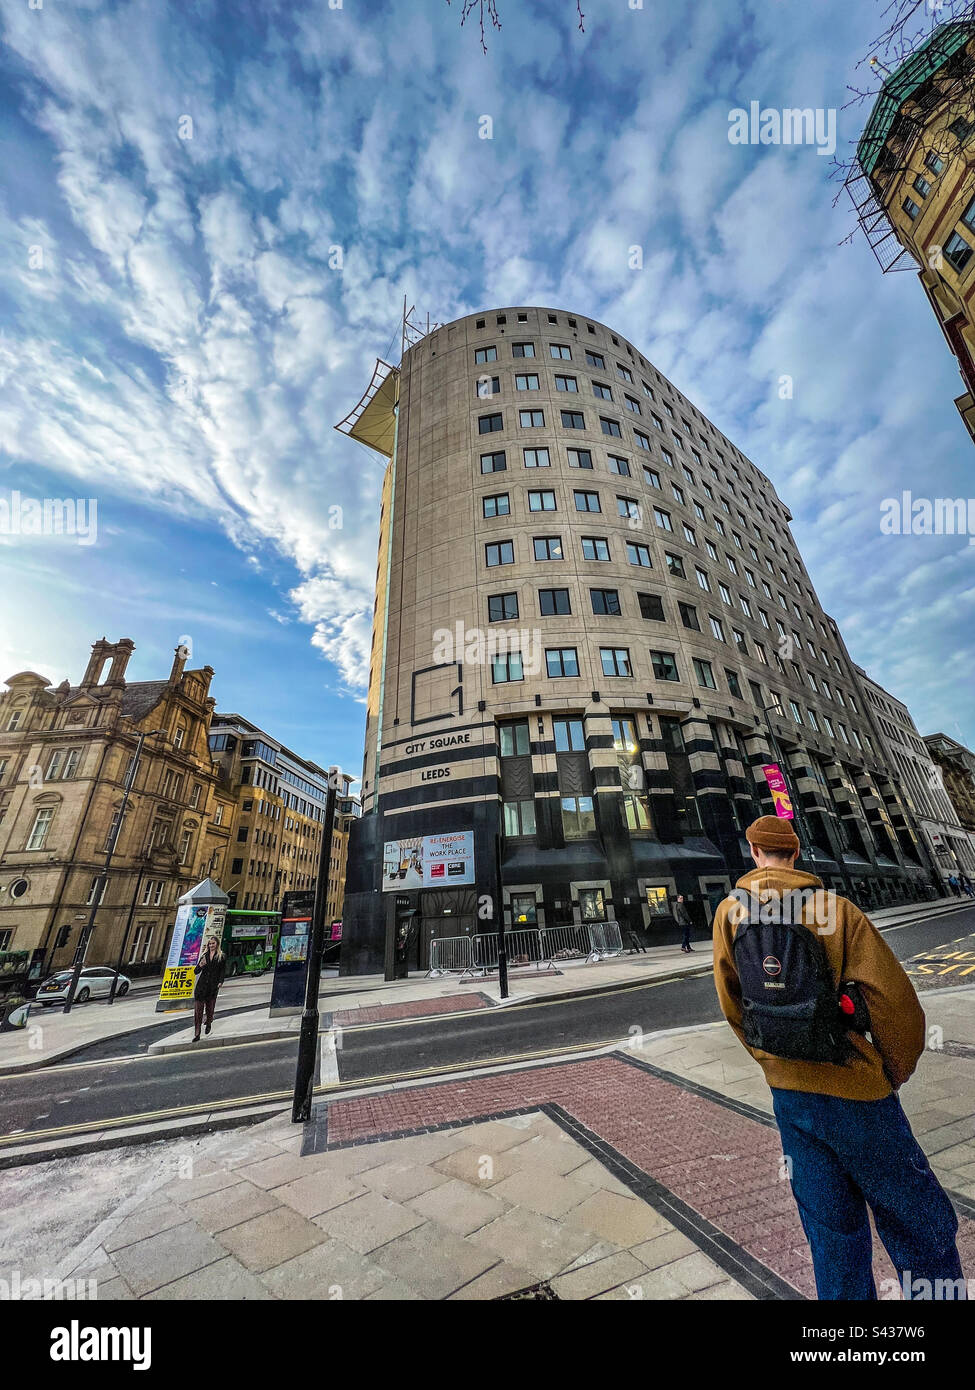 City square Leeds Stock Photo